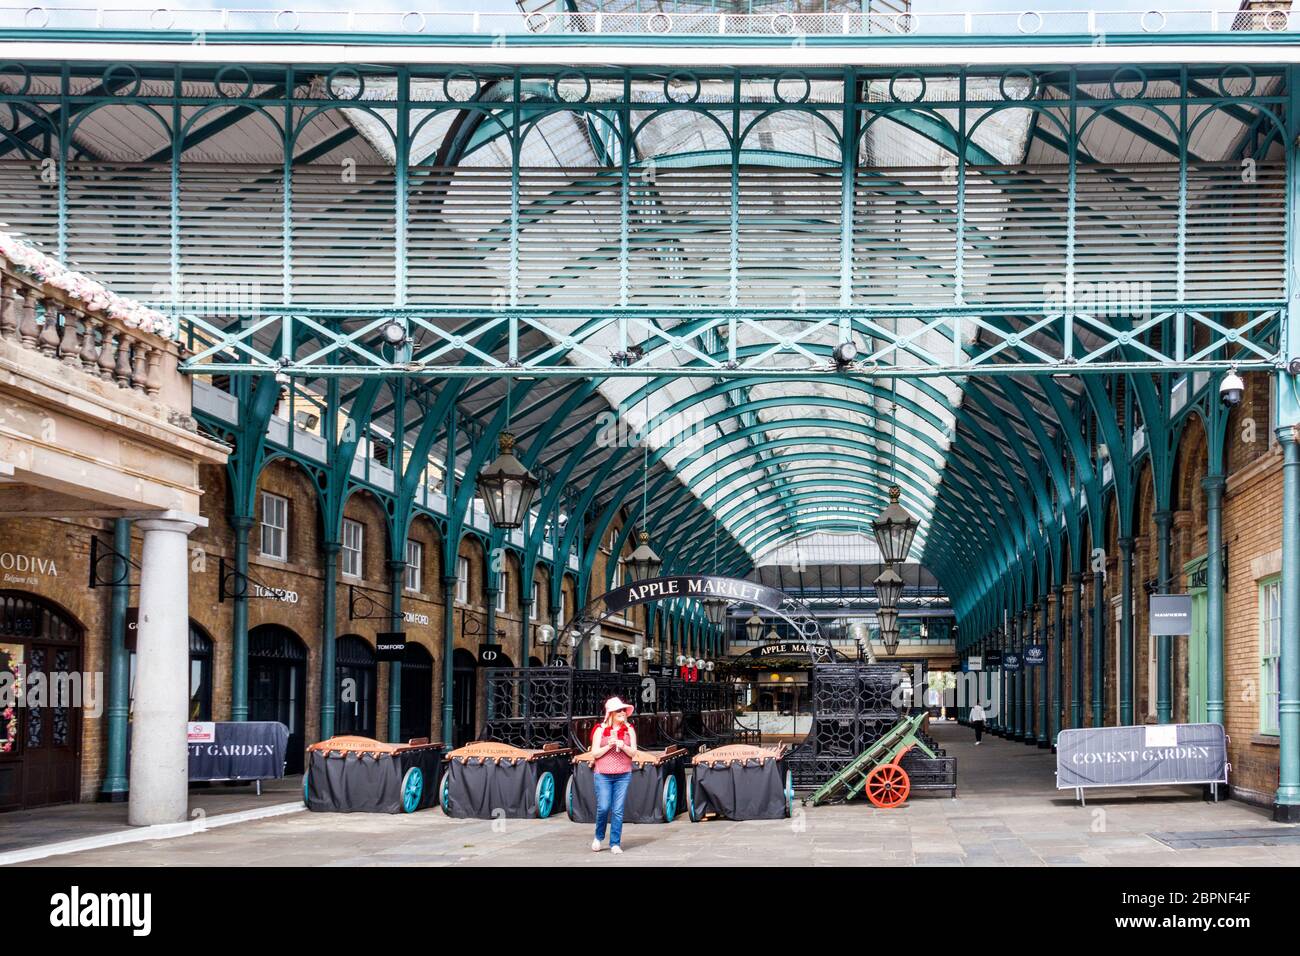 Des stands vides dans le marché aux pommes de Covent Garden, normalement occupé, presque déserté un week-end pendant le confinement de la pandémie de coronavirus, Londres, Royaume-Uni Banque D'Images